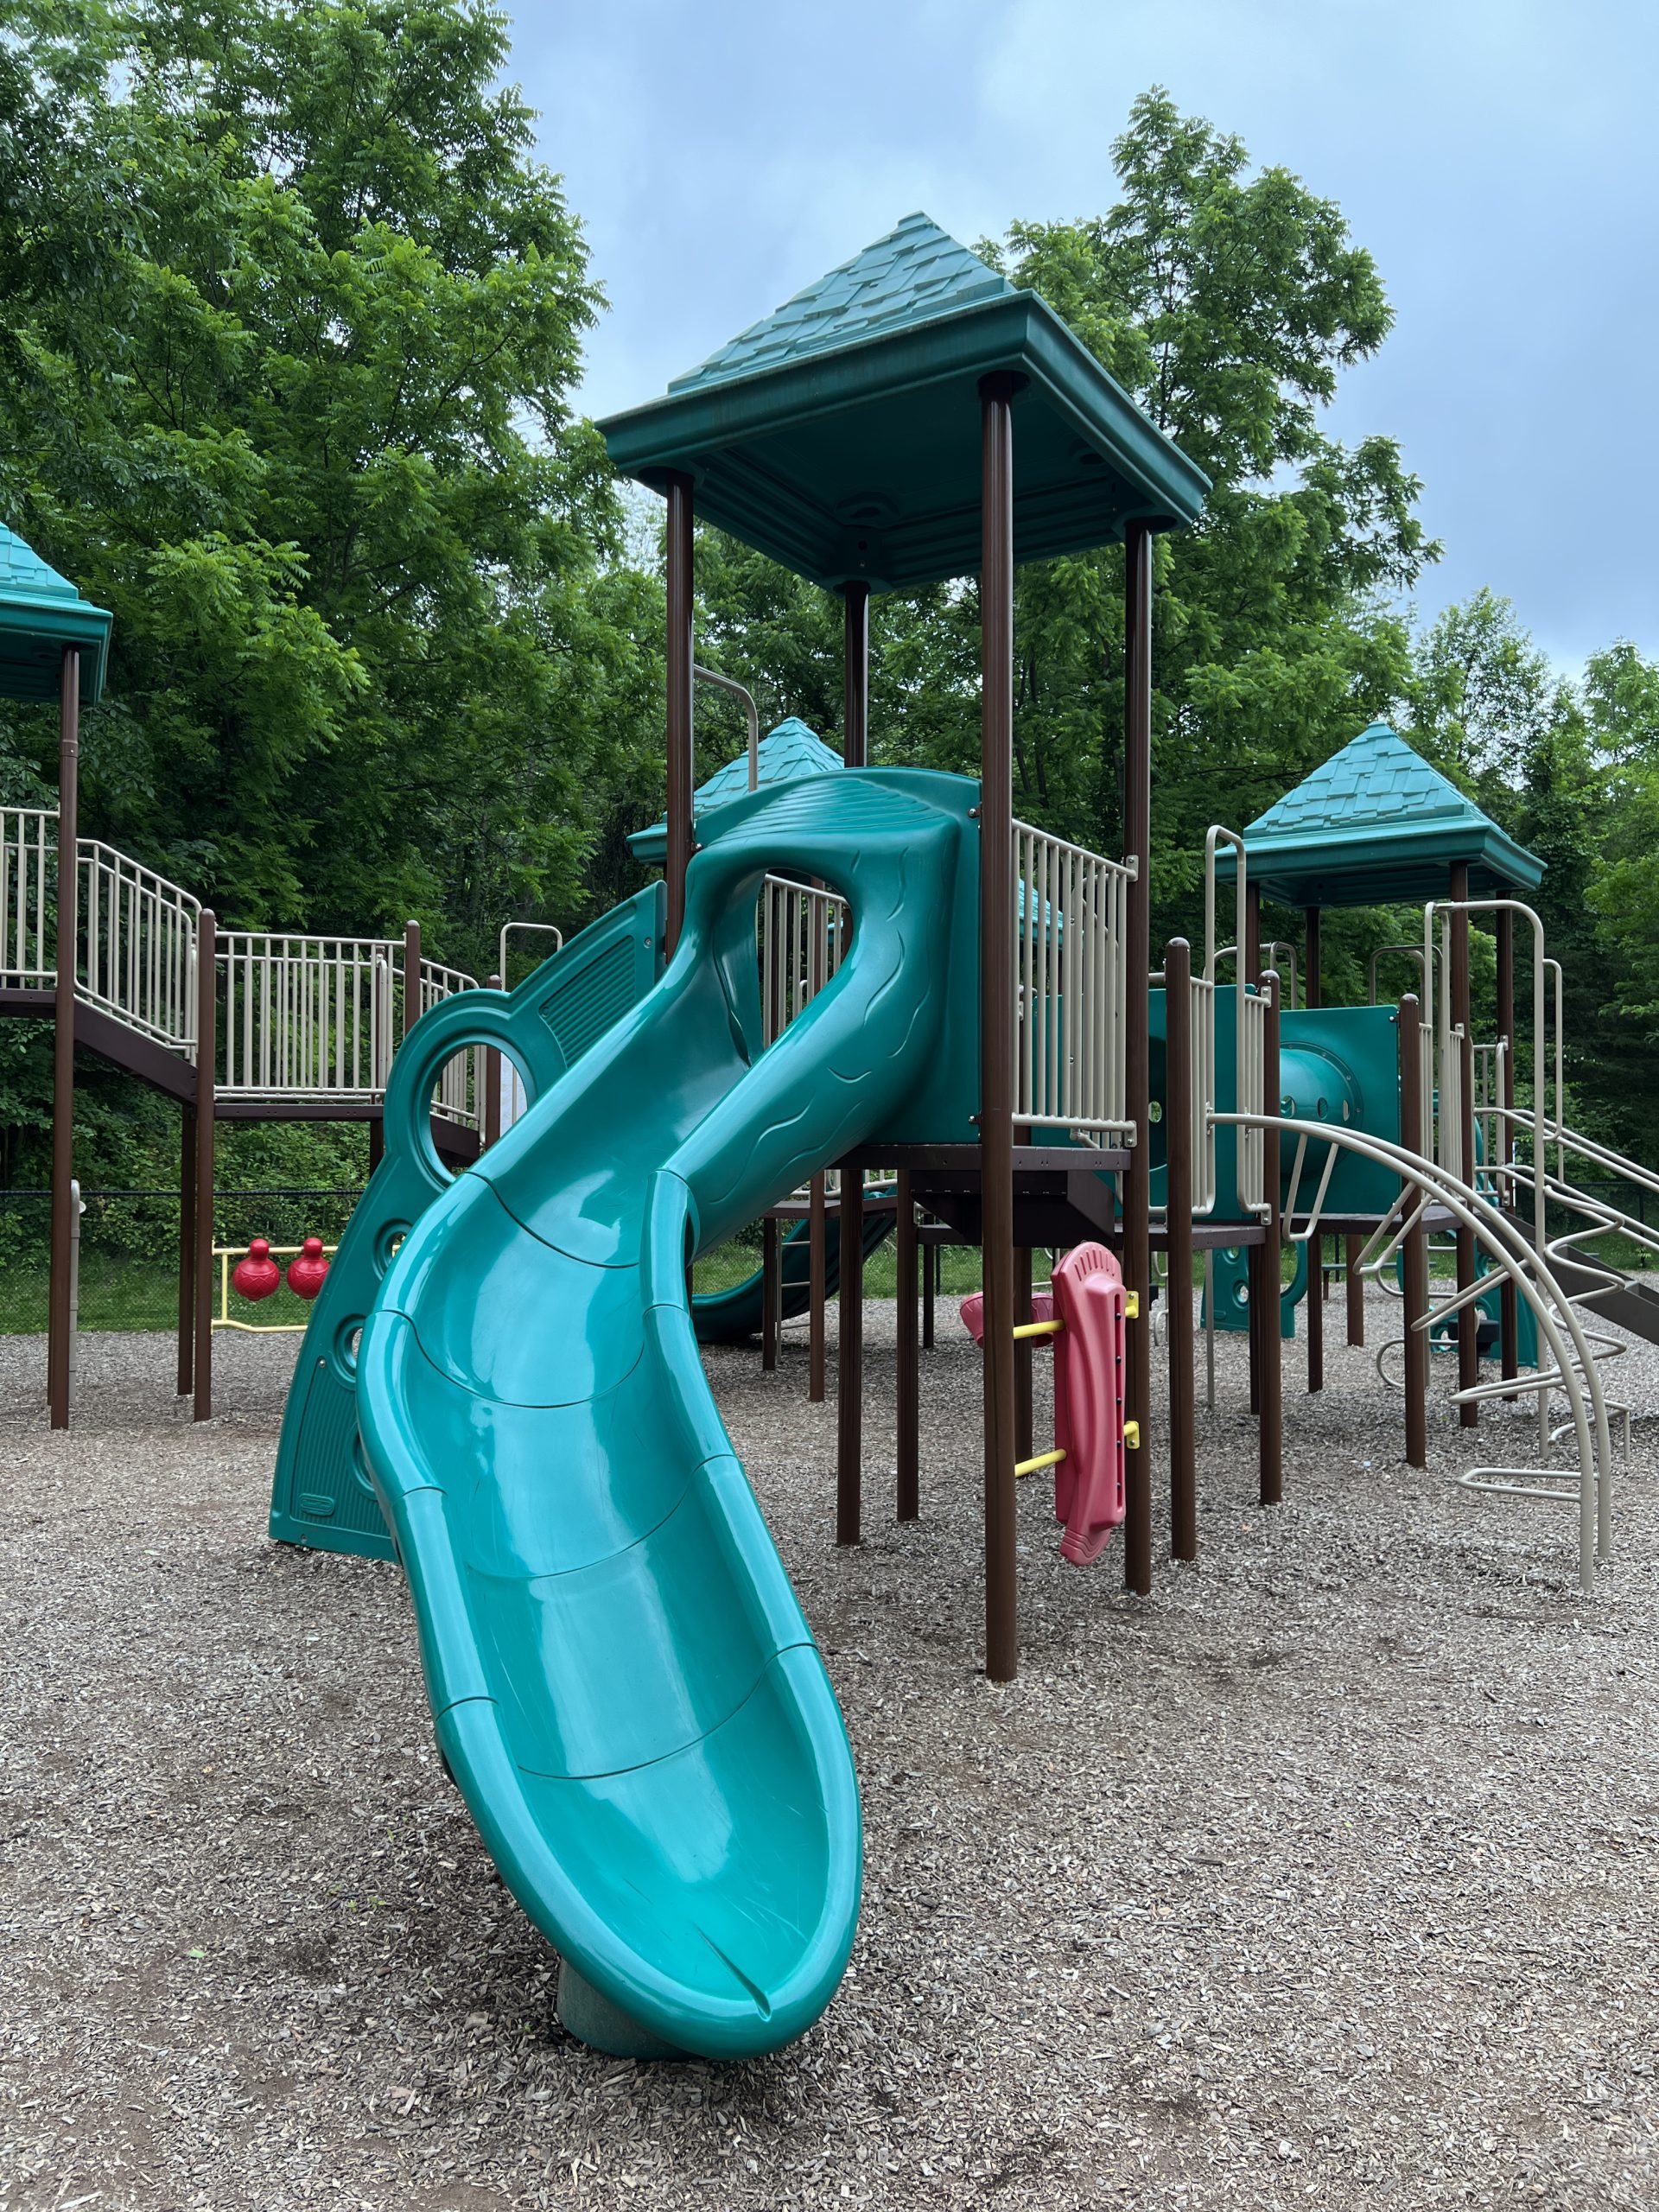 First Curvy Slide for older kids at Kids Kastle Station Park Playground in Sparta NJ